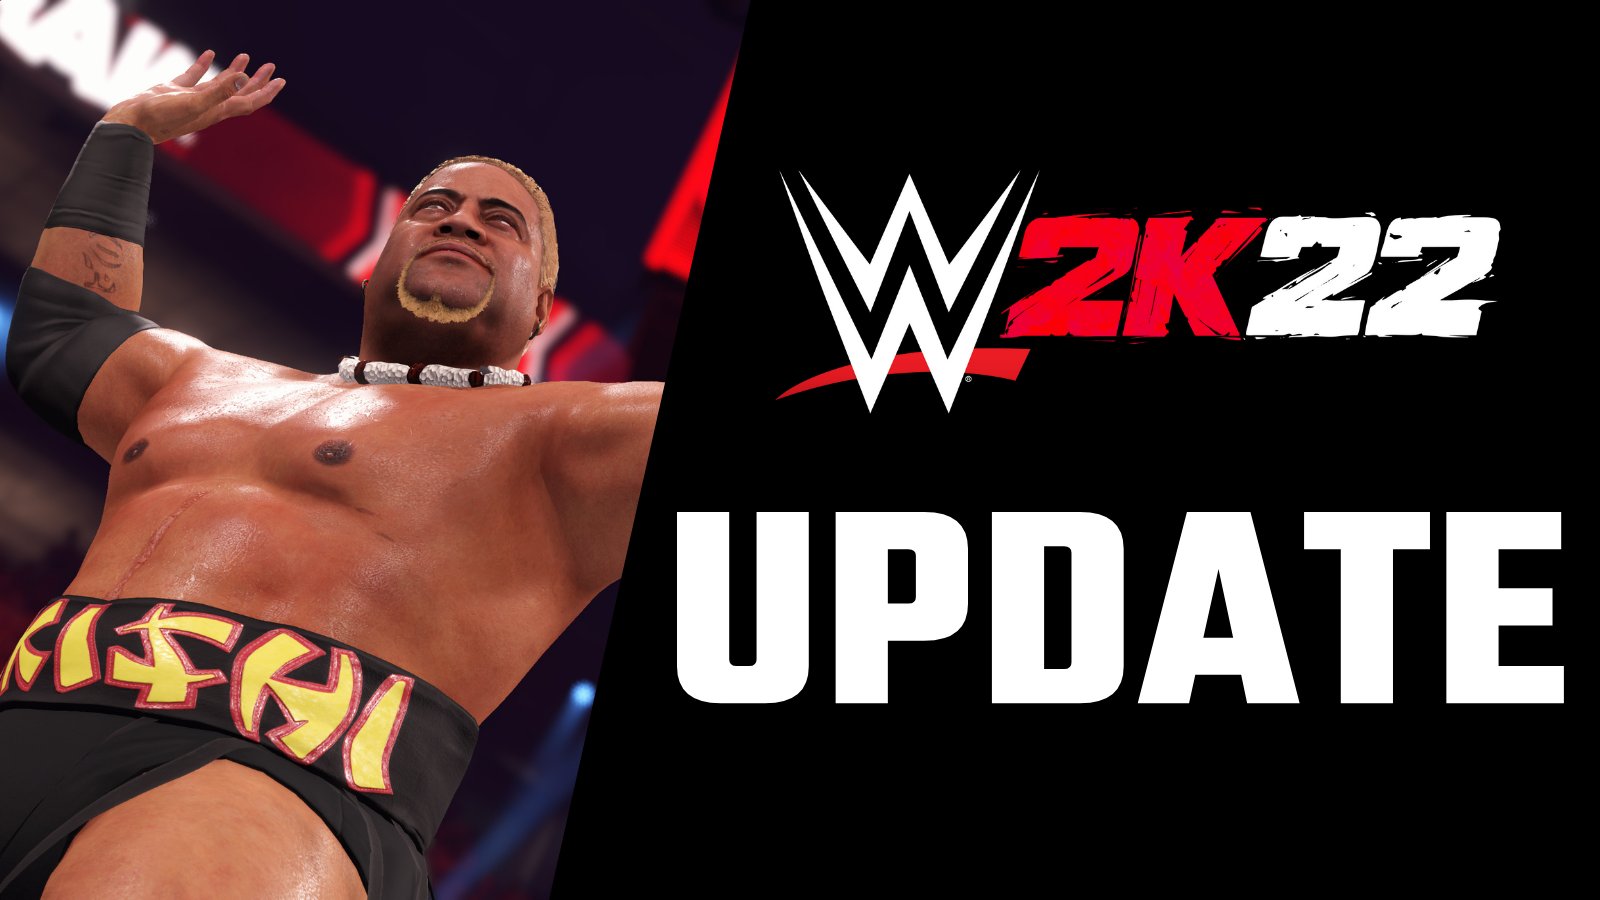 WWE 2K22 update